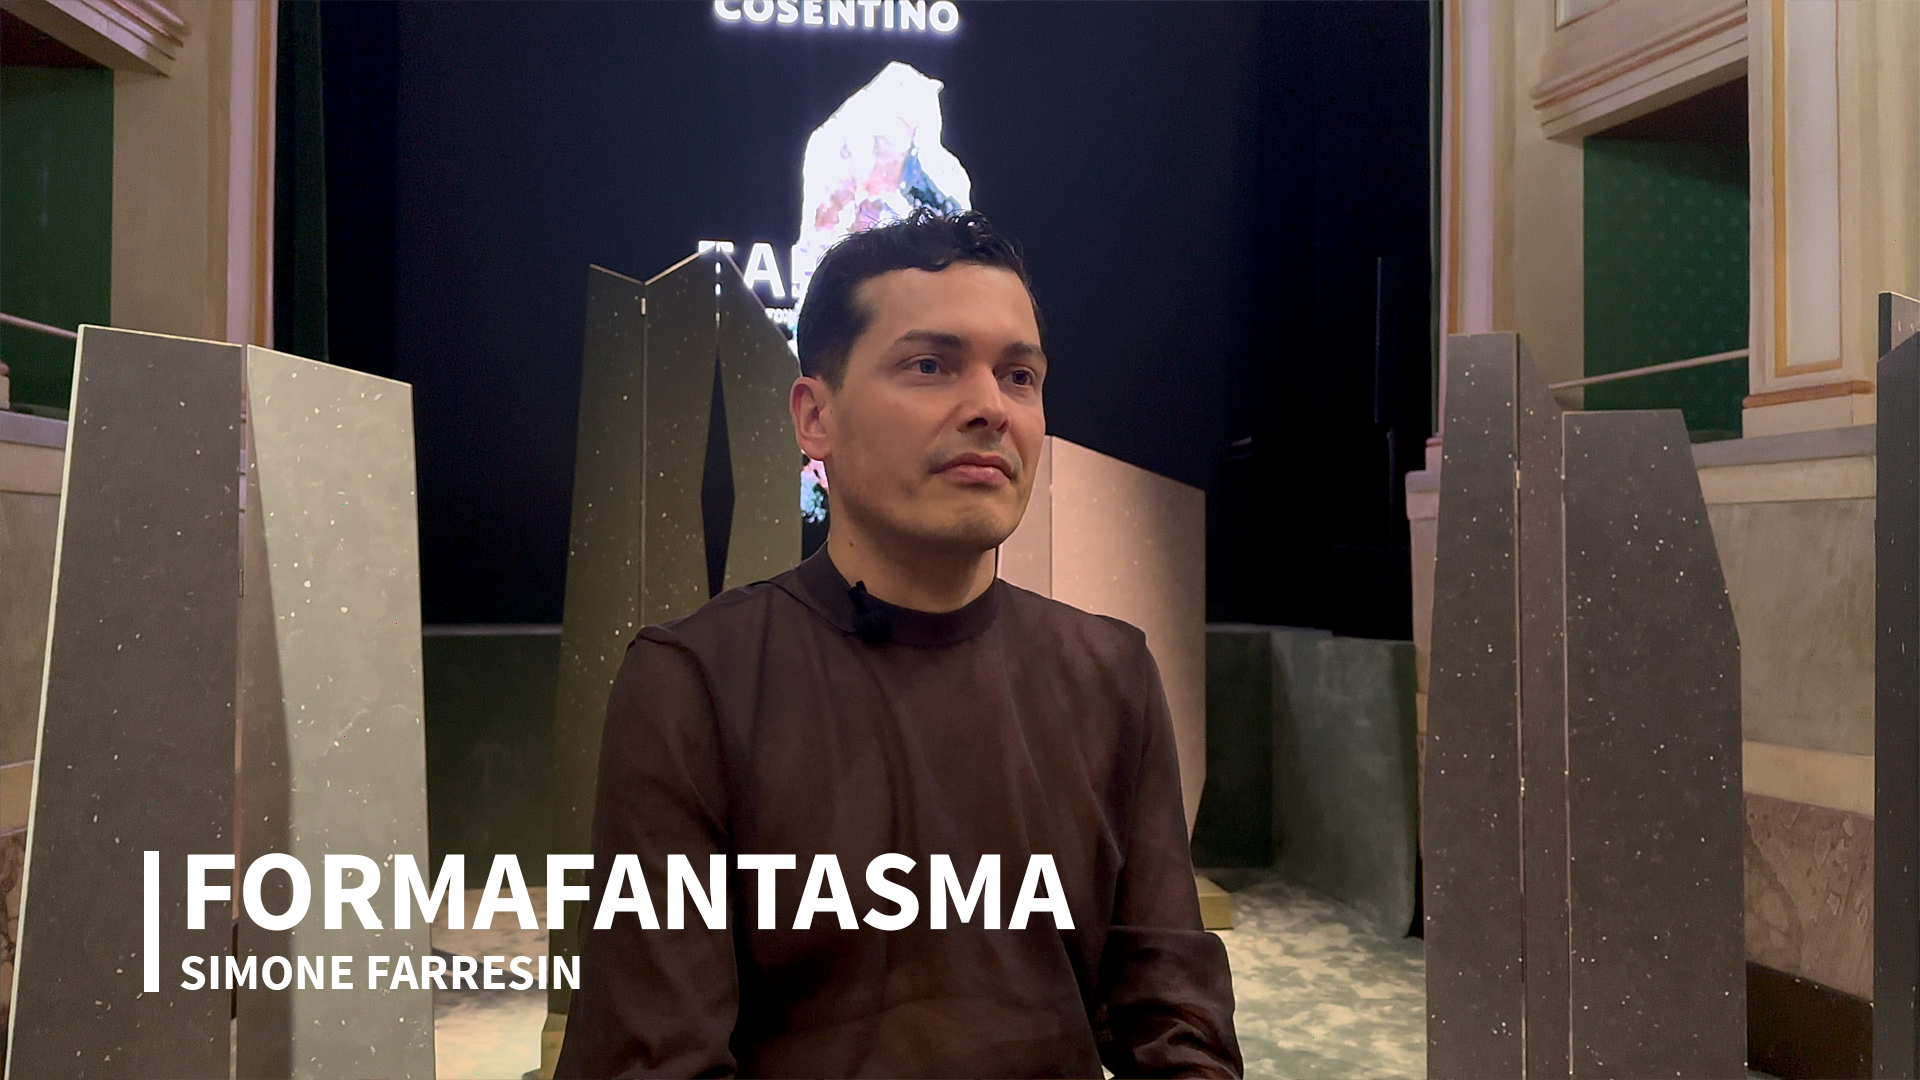 Симона Фаррезен из выступления Formafantasma на Неделе дизайна в Милане и ответственности дизайнеров